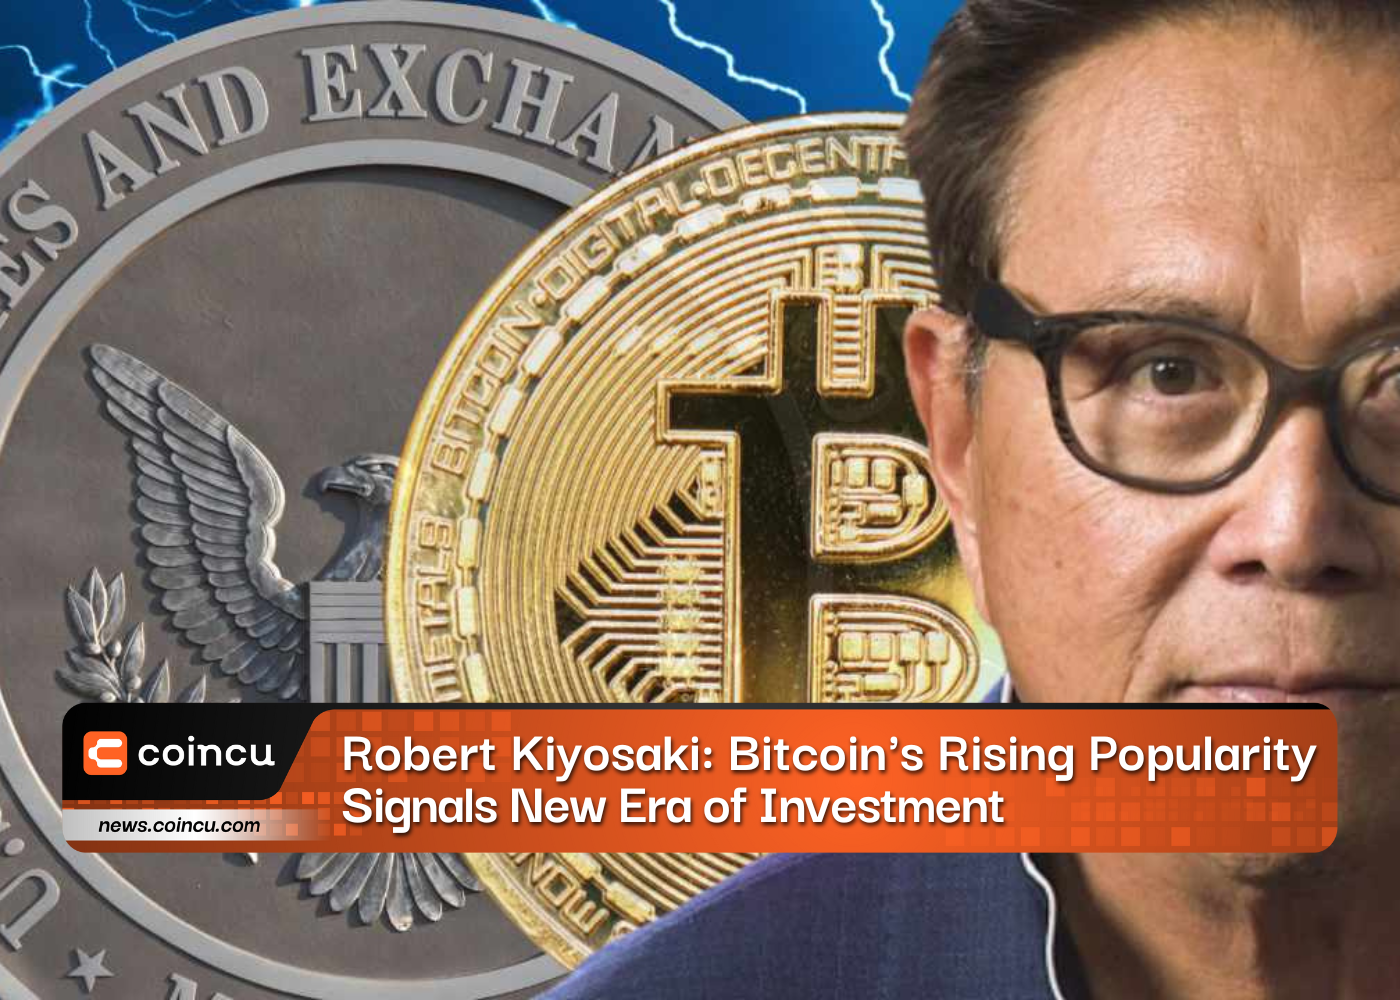 Popularité croissante des Bitcoins de Robert Kiyosaki